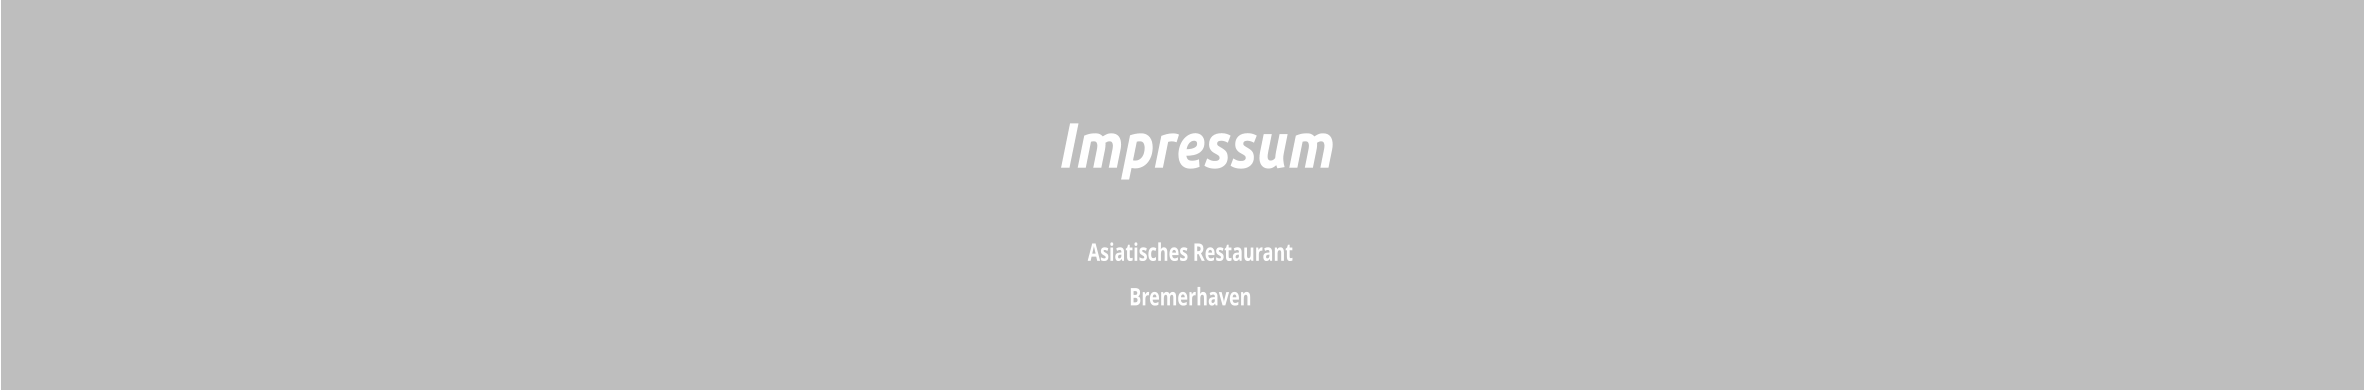 Asiatisches Restaurant  Bremerhaven  Impressum